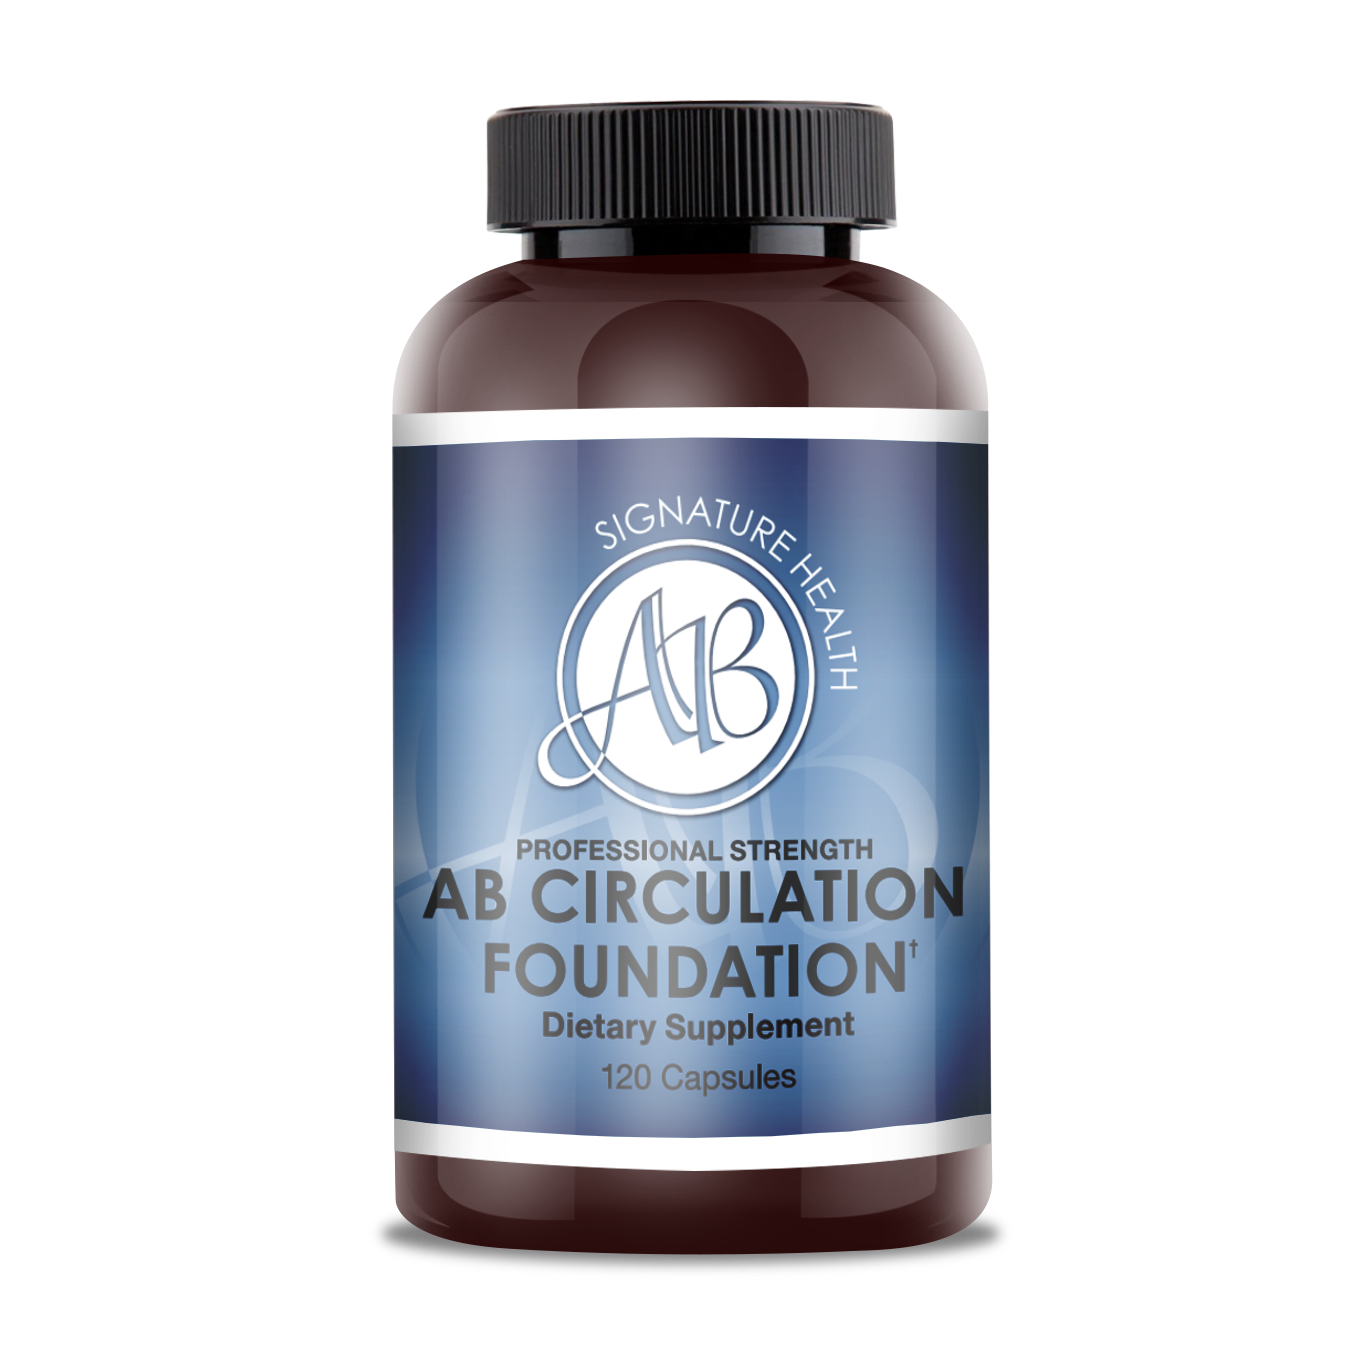 AB Circulation Foundation